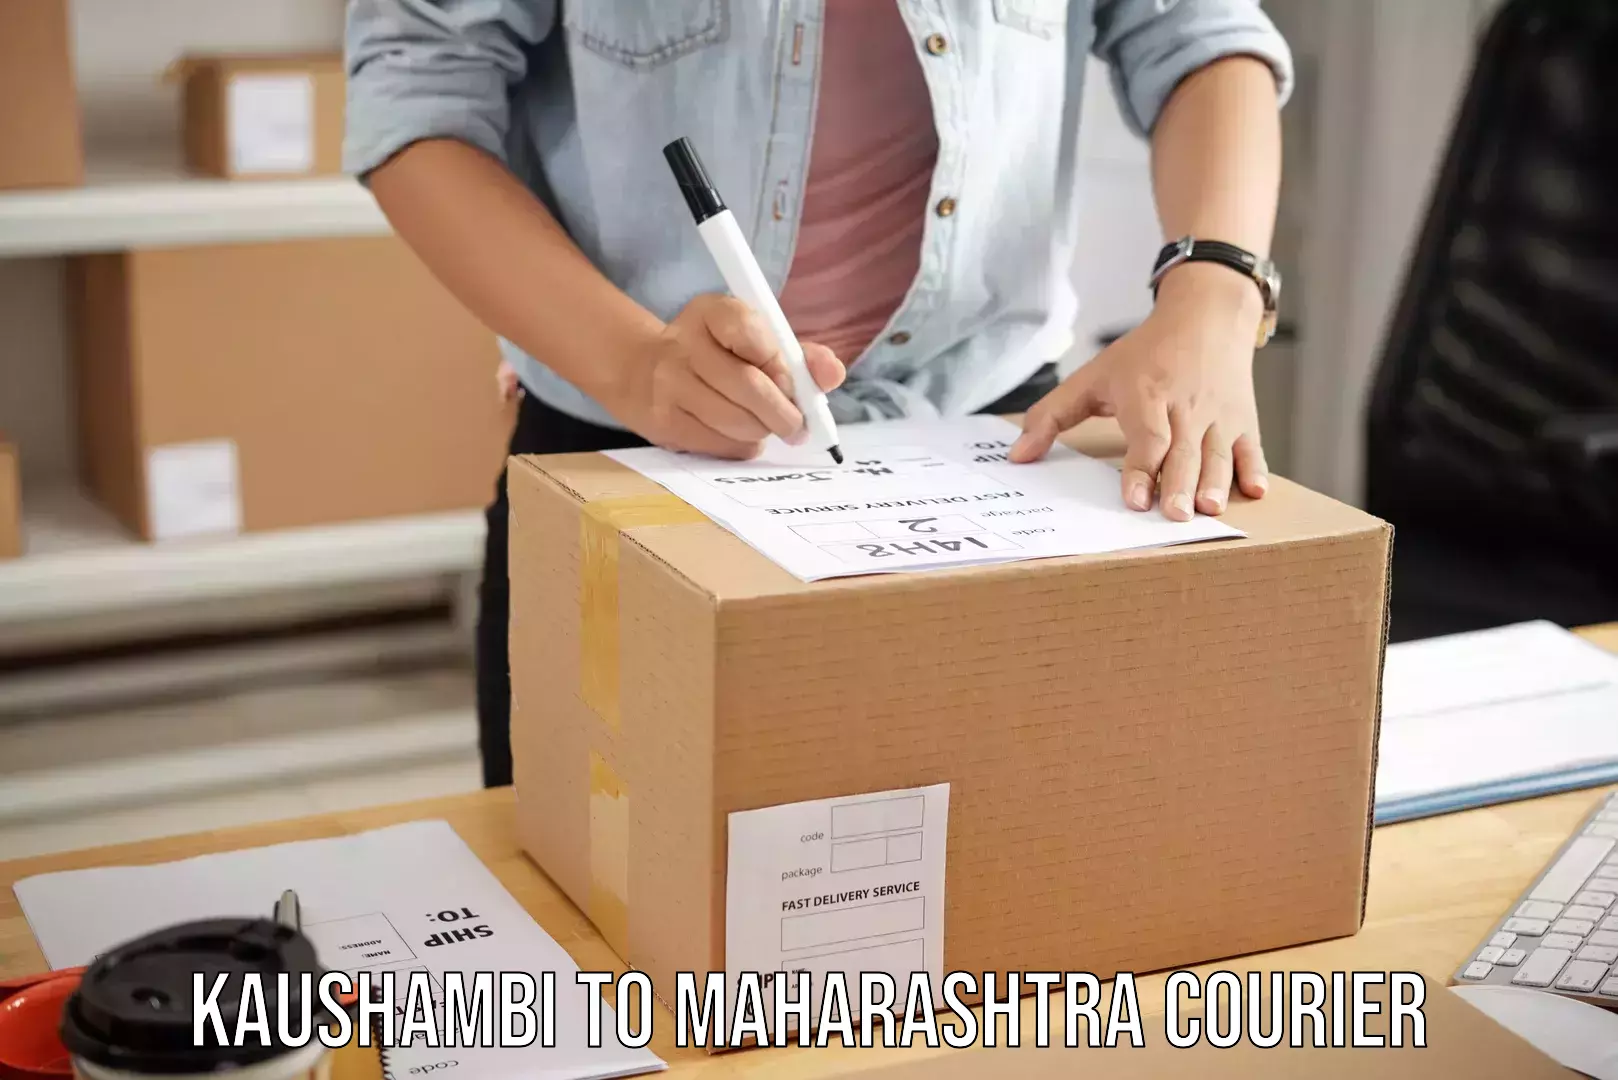 Luggage shipment specialists Kaushambi to Maharashtra